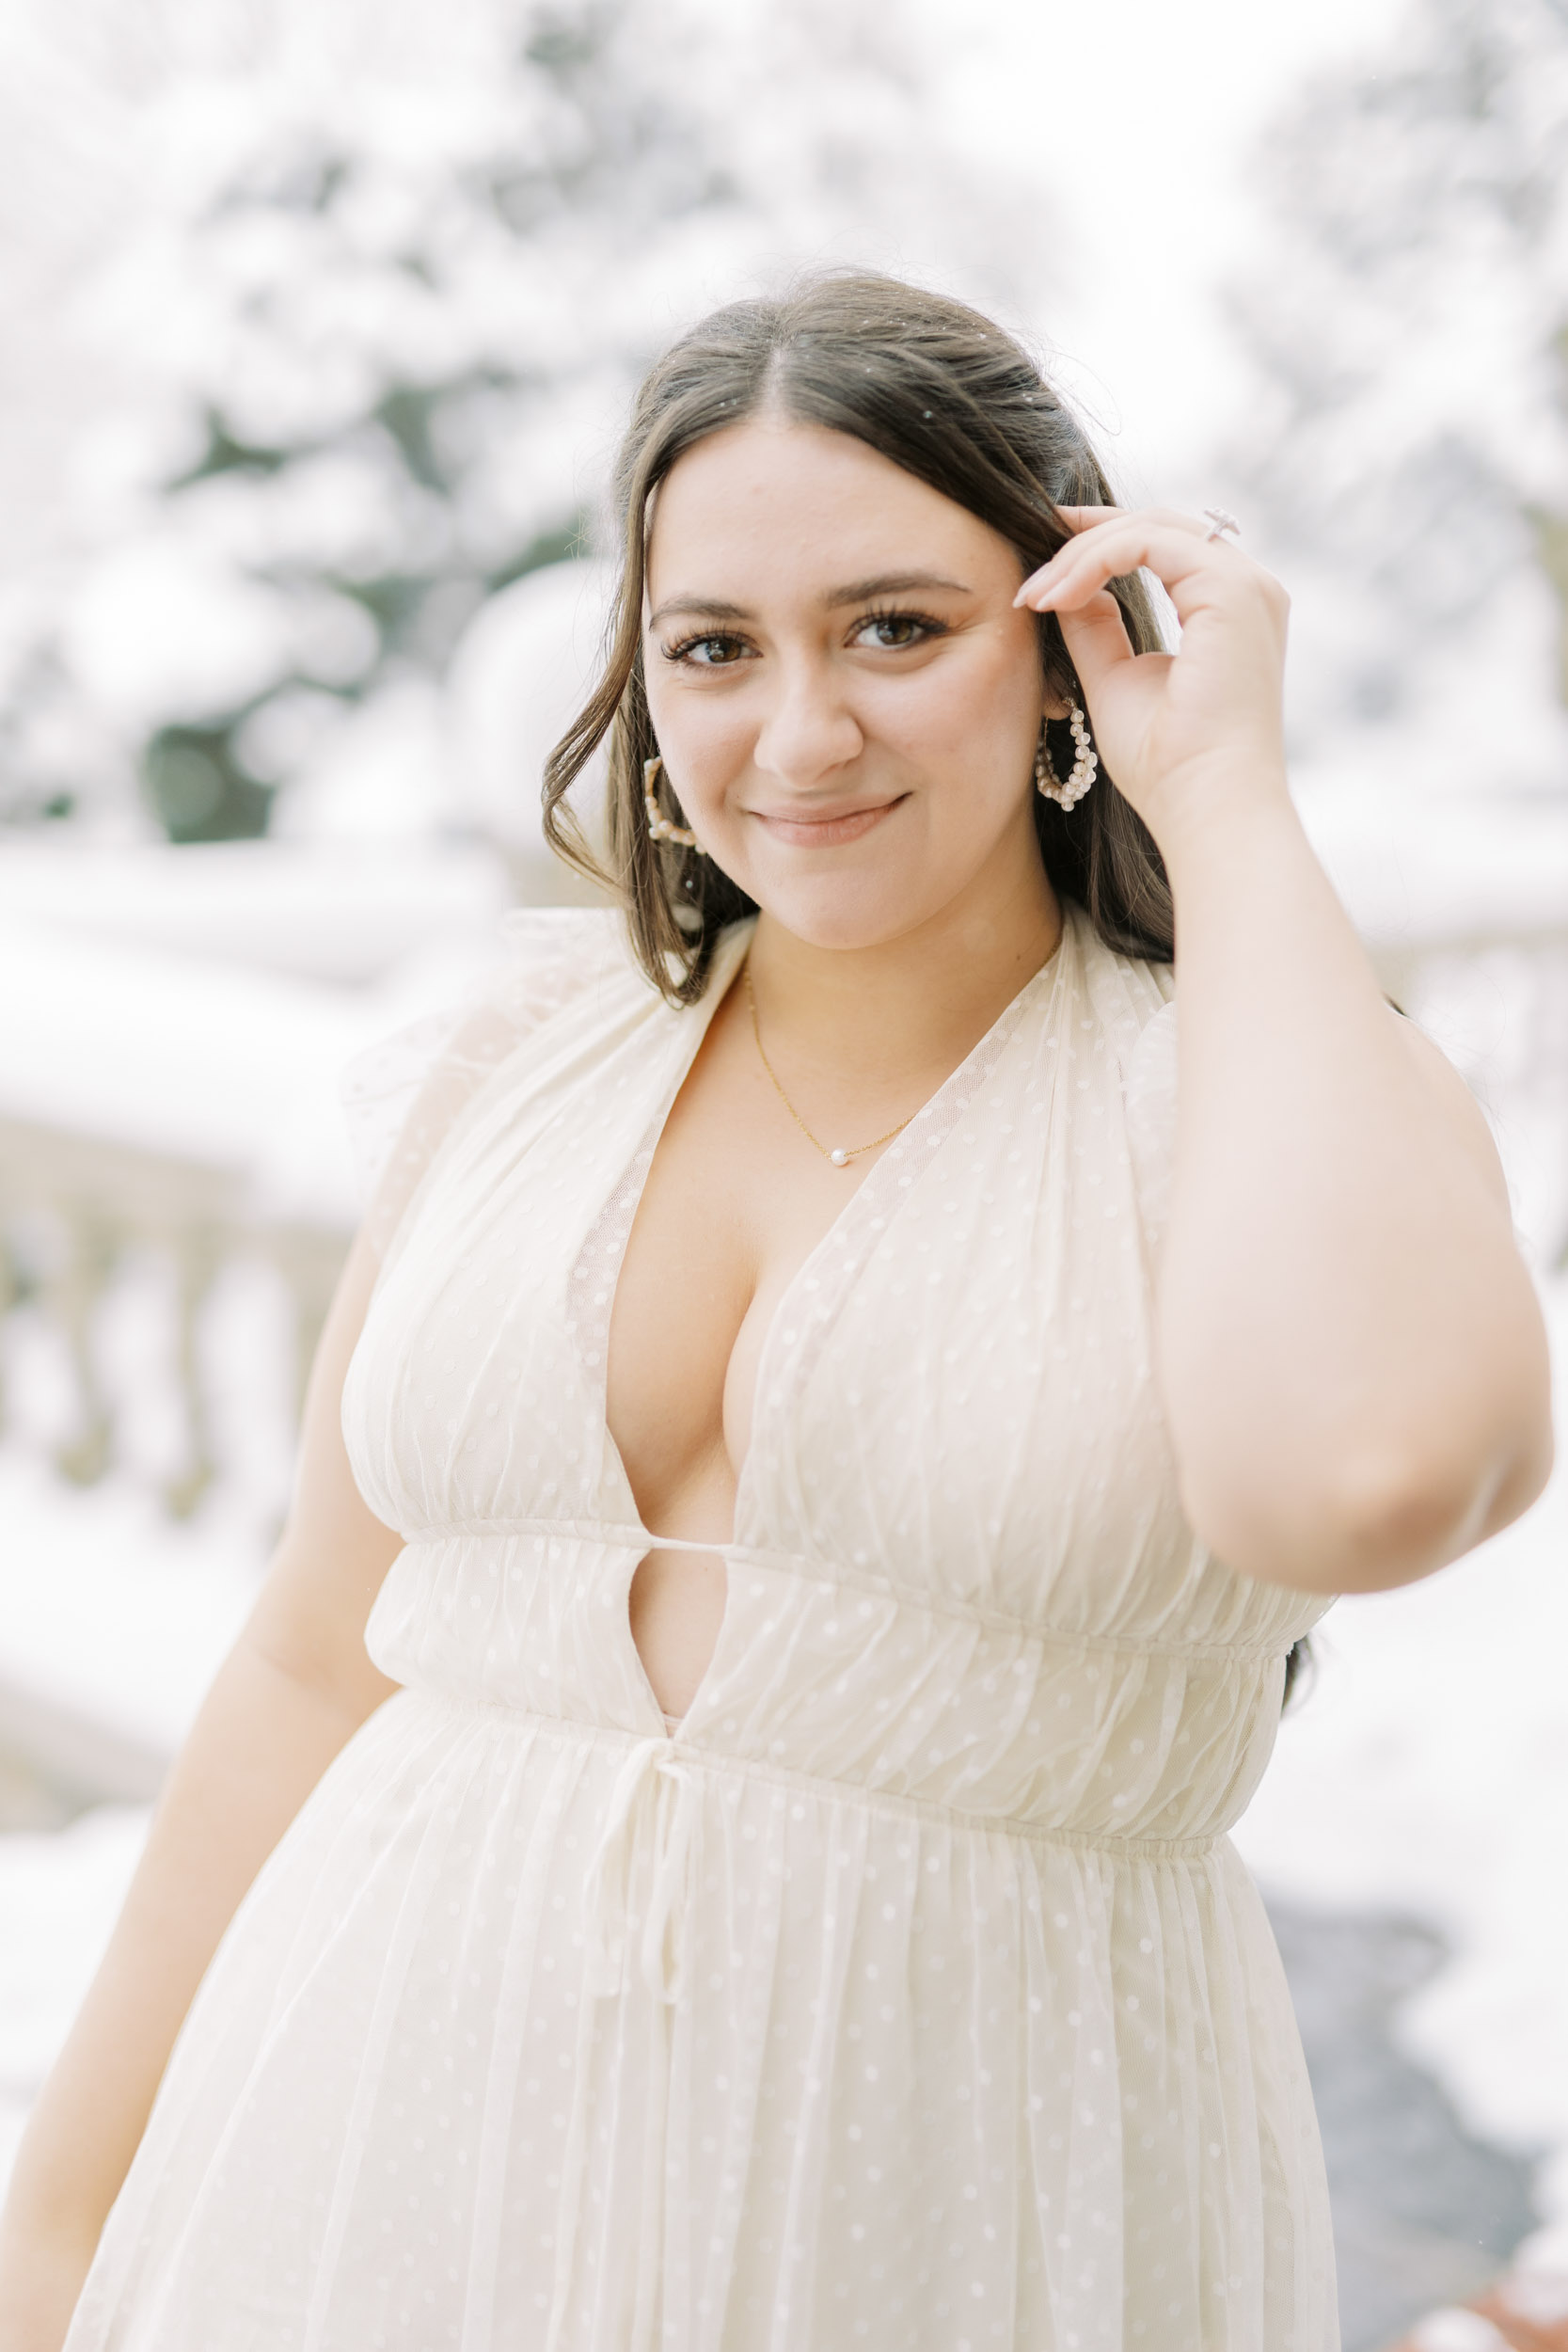 Bride posing with snowy backdrop